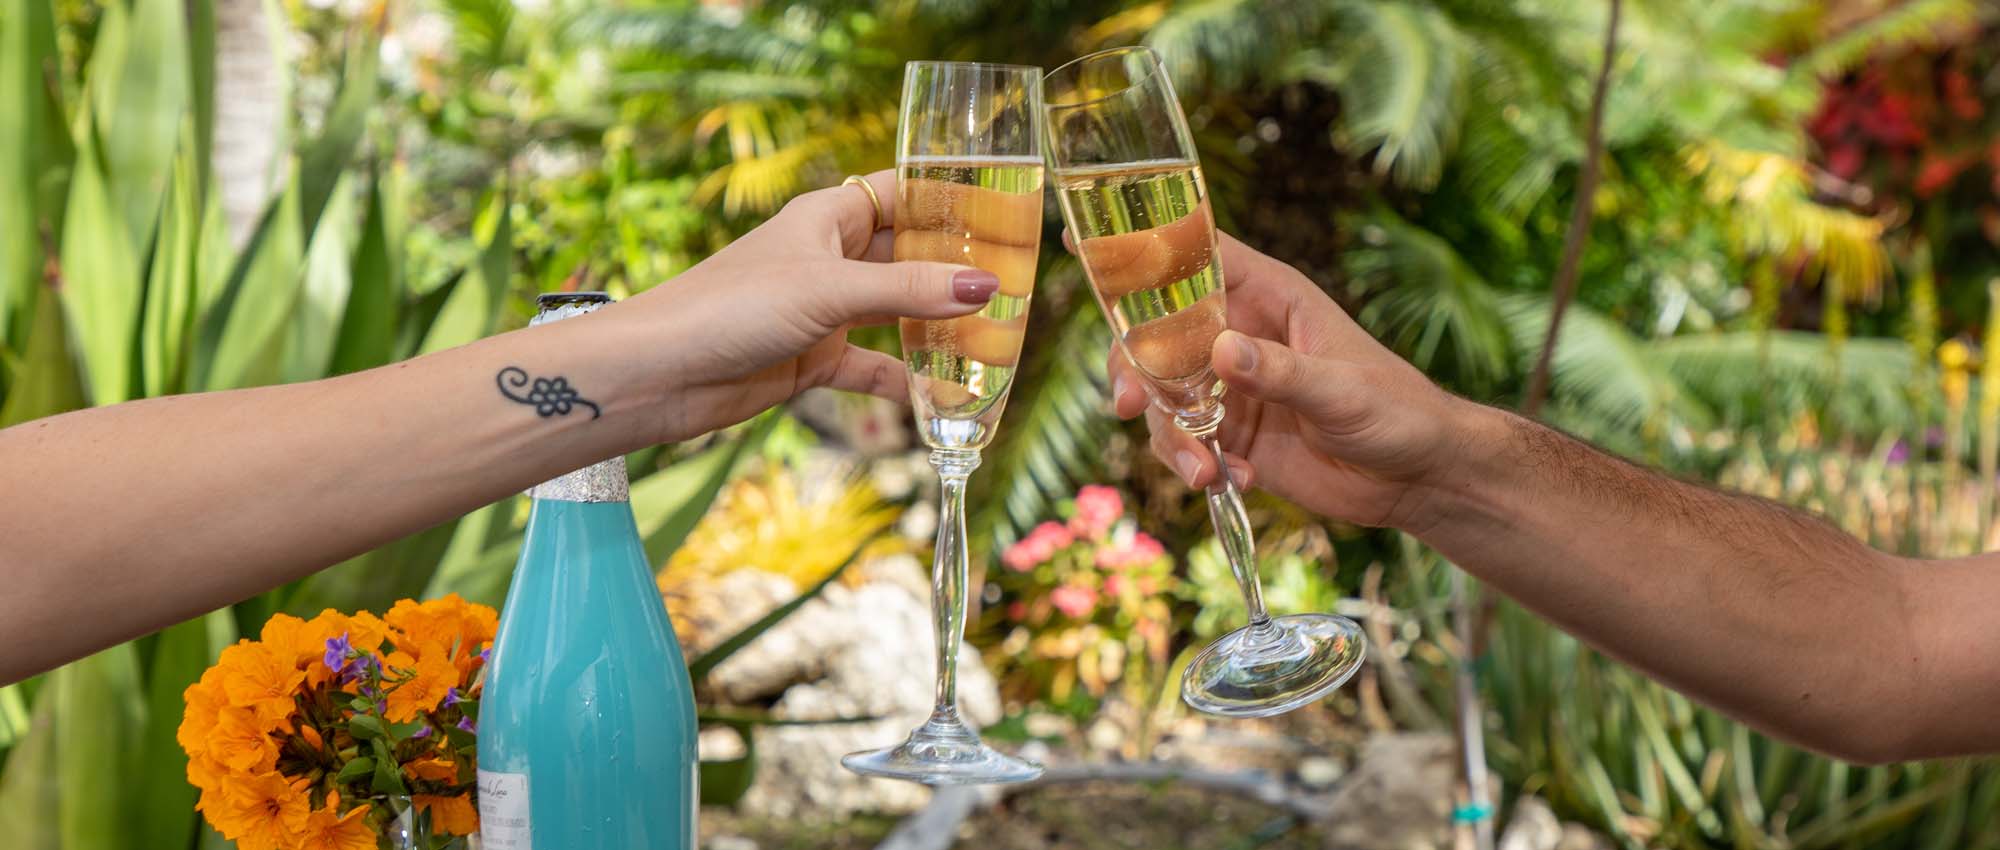 Twee handen proosten buiten met champagne boven een kleine borrelplank